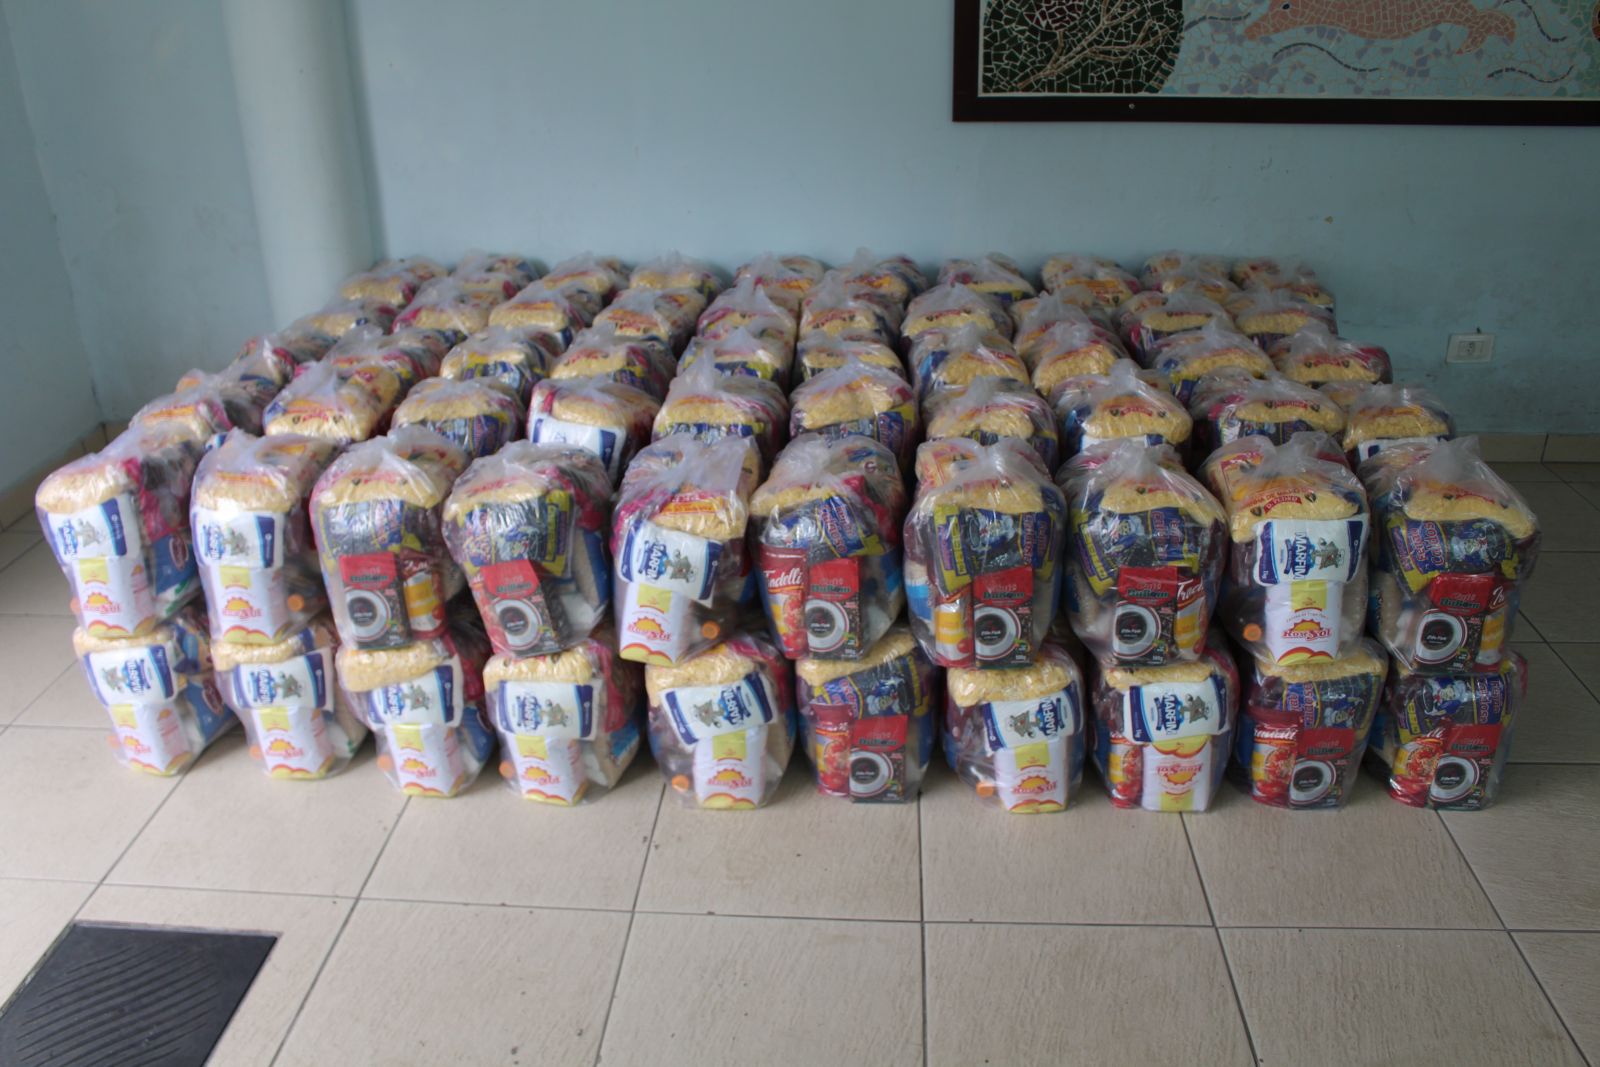 100 cestas básicas foram entregues para a Fepe, que atende pessoas com deficiências múltiplas